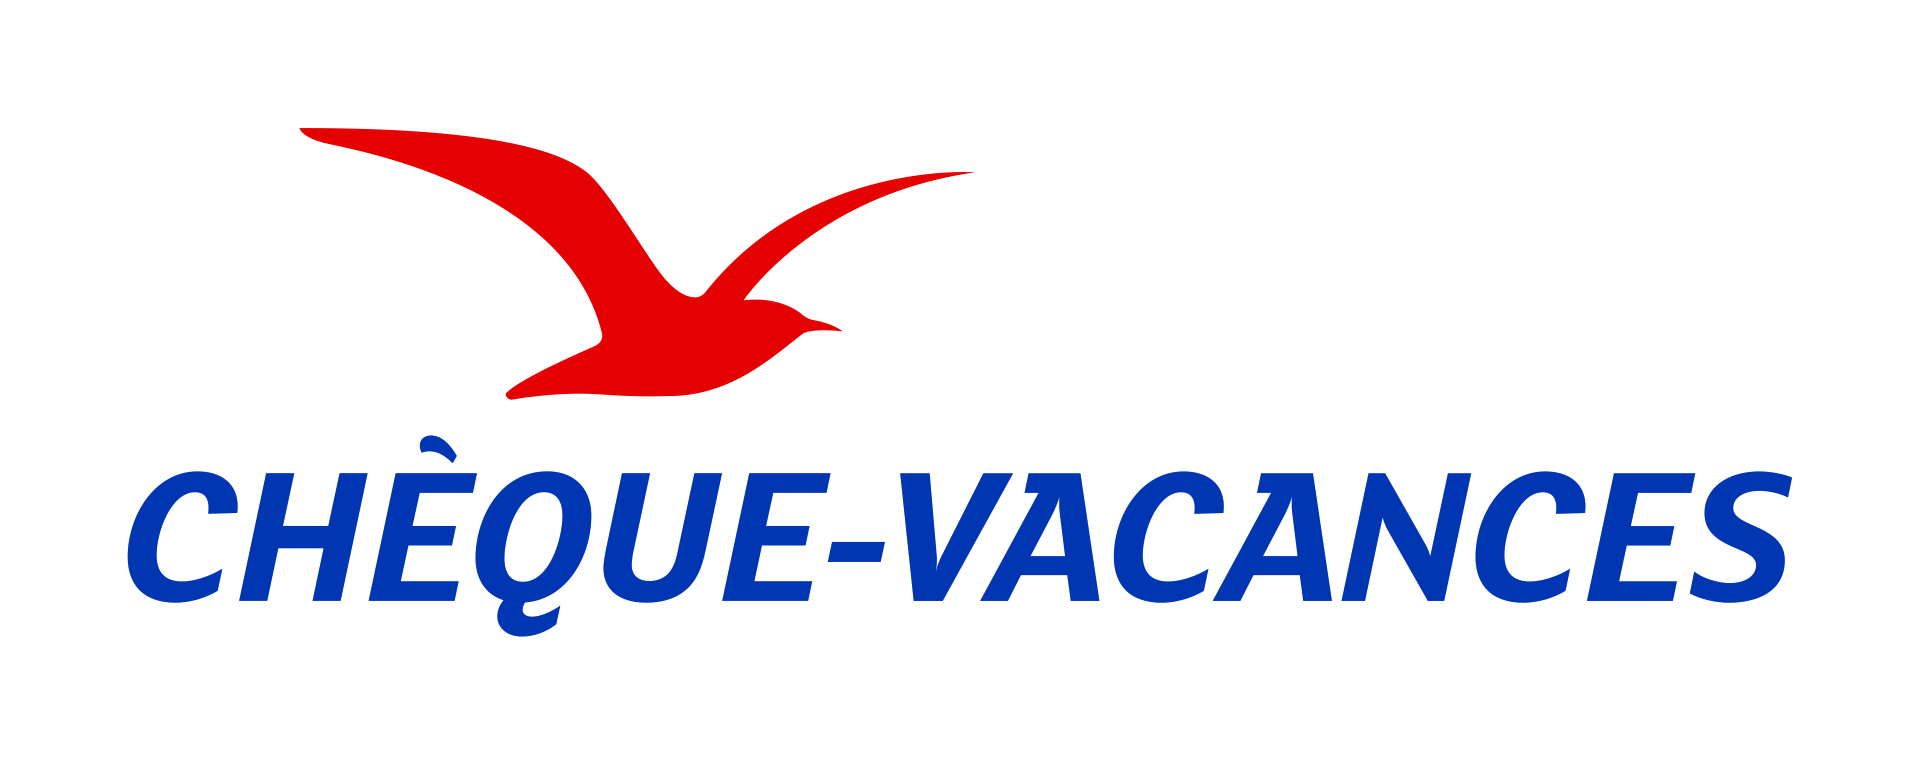 cheque-vacances-logo